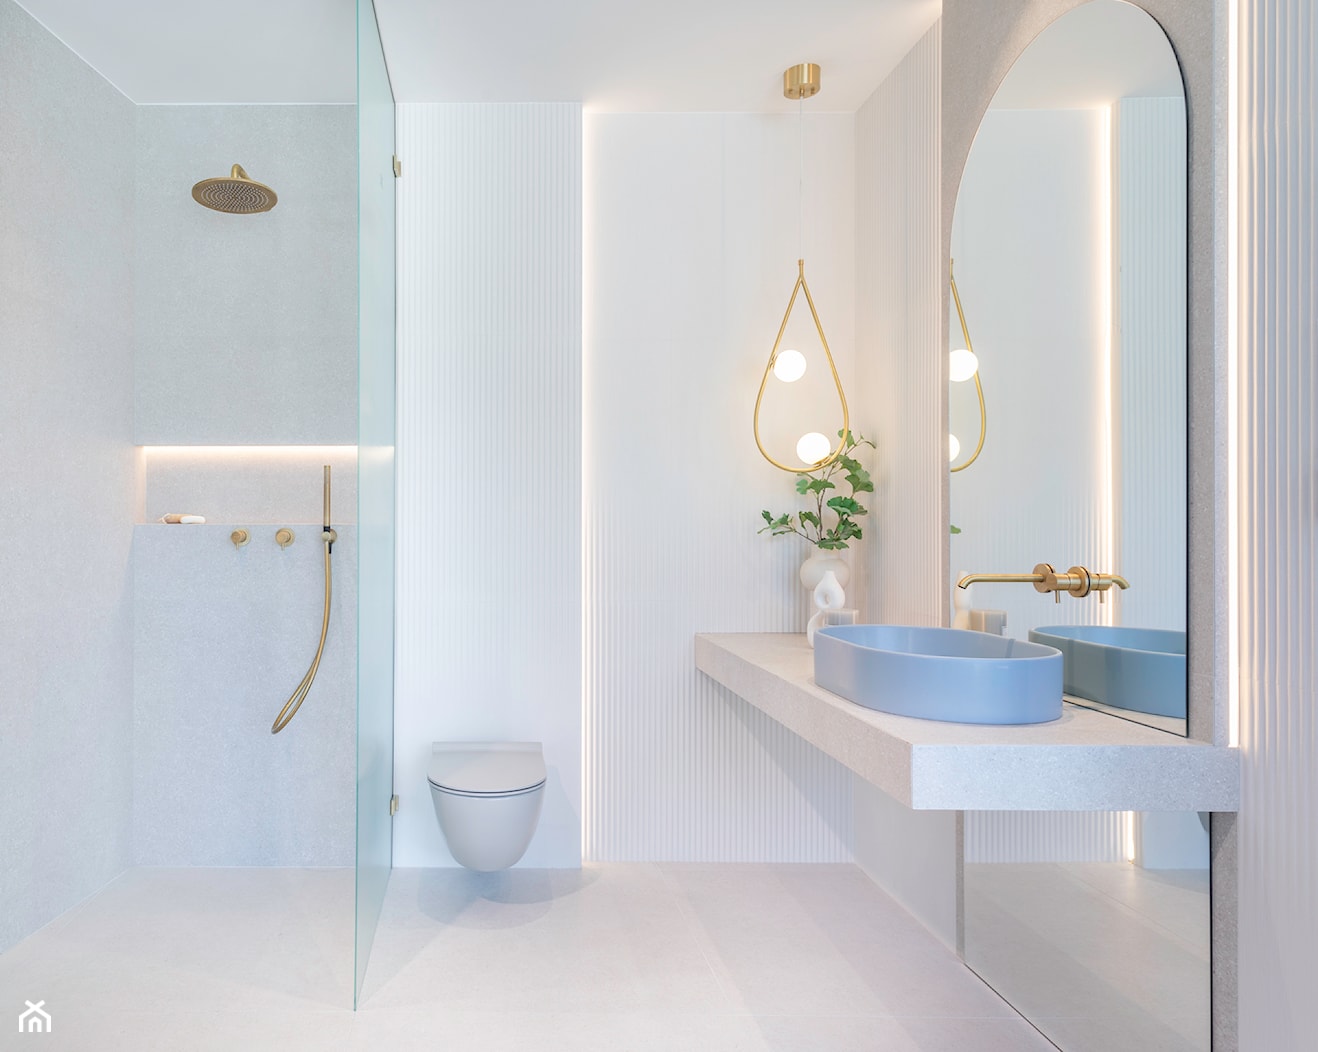 Łazienka z prysznicem w delikatnych kolorach – inspiracja w błękicie i złocie - zdjęcie od Maxfliz Salony Wyposażenia Wnętrz - Homebook